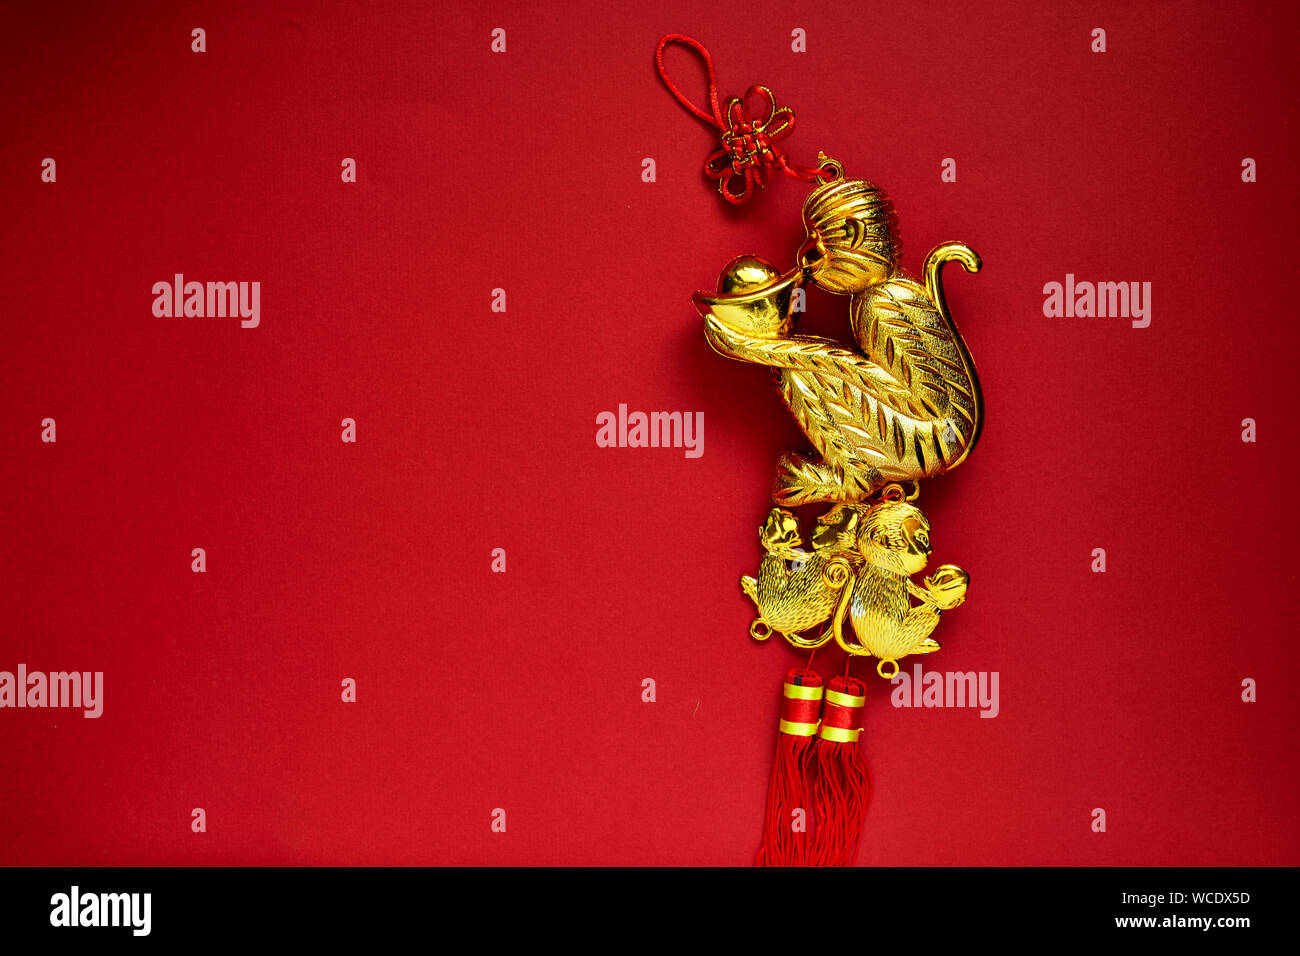 Detalle de la decoración de oro contra el fondo rojo. Foto de stock